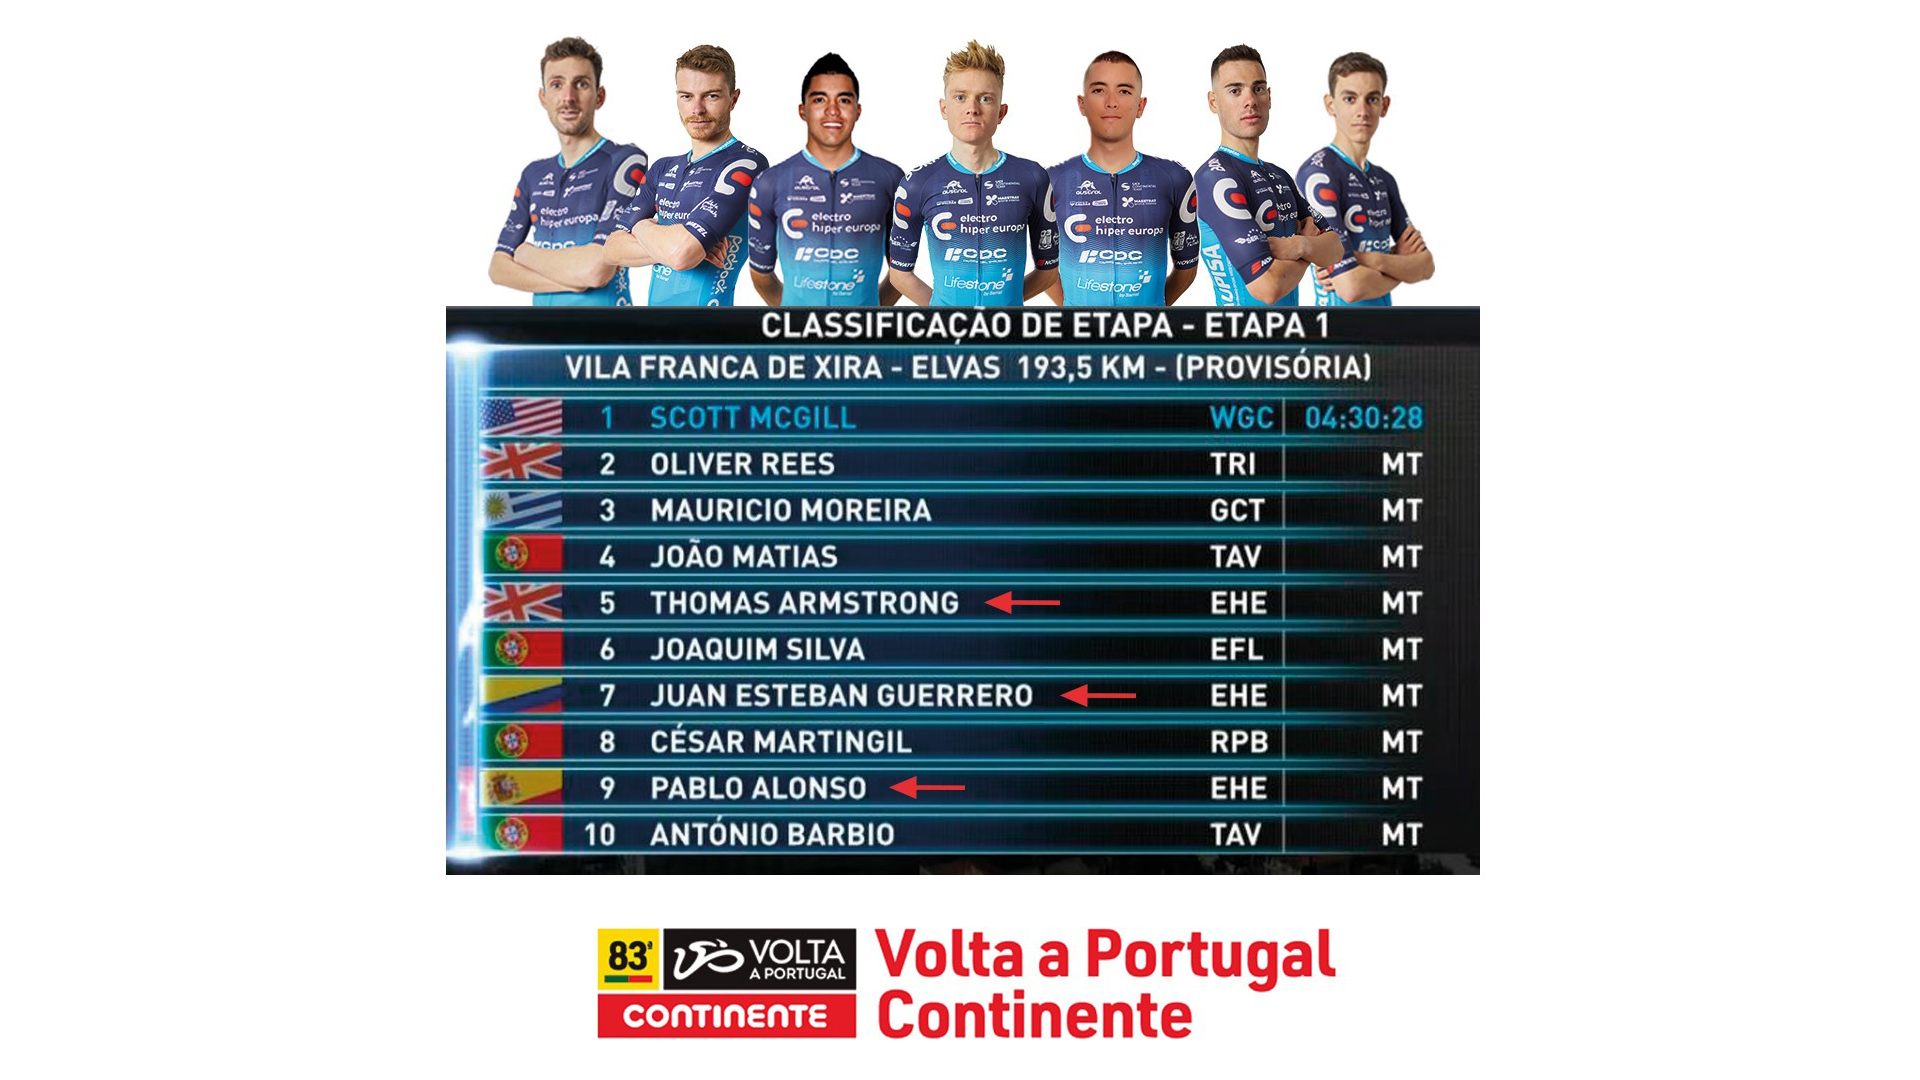 Gran arrancada d'Electro Hiper Europa-Continental Team en la 1a etapa de la 83a Volta a Portugal